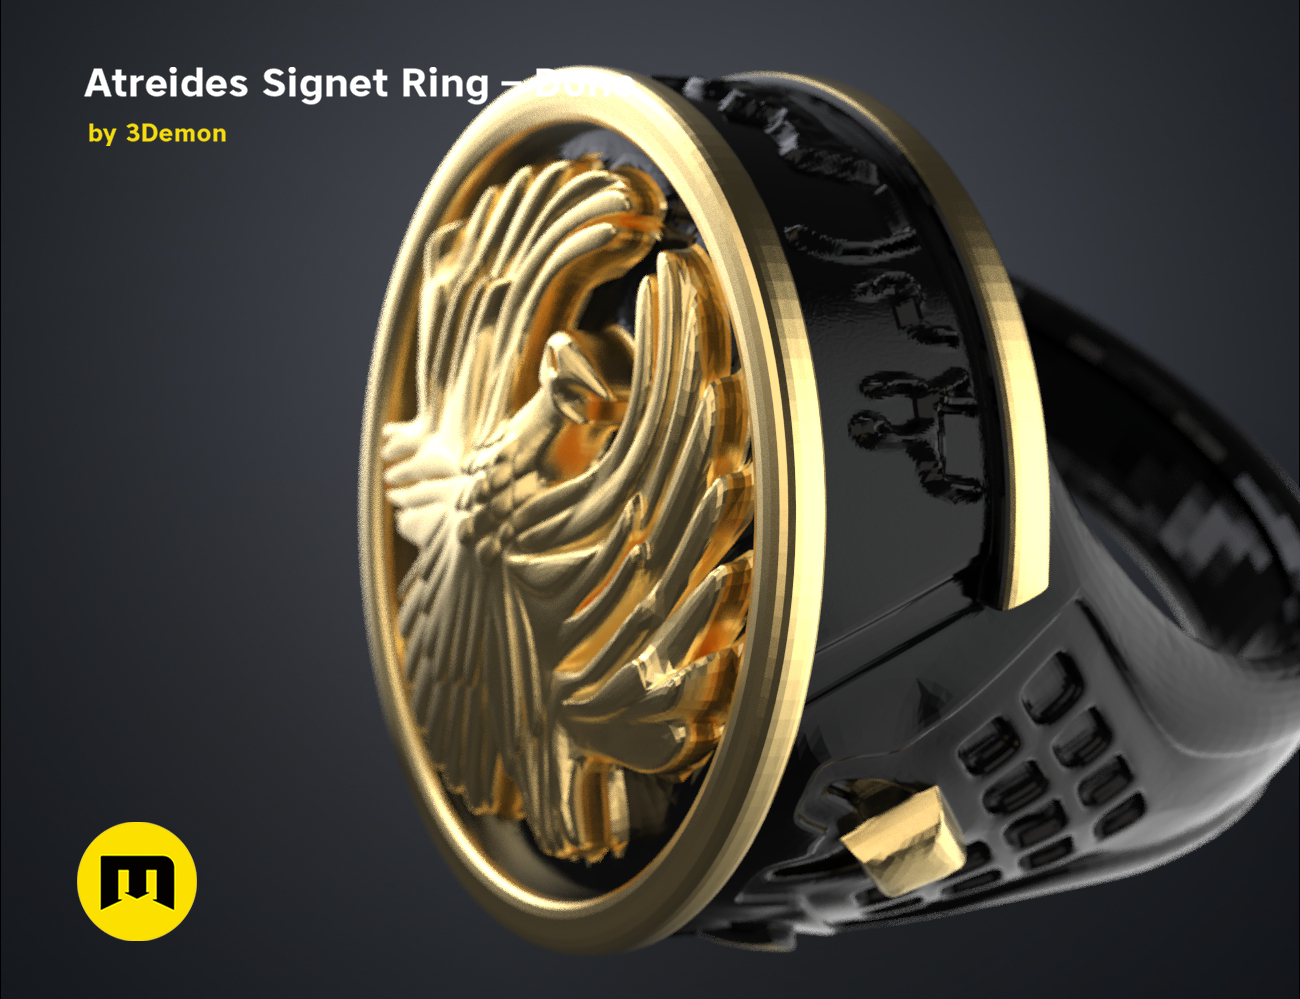 Atreides-ring-color.5.png Download free STL file Atreides Signet Ring - Dune • 3D printing template, 3D-mon